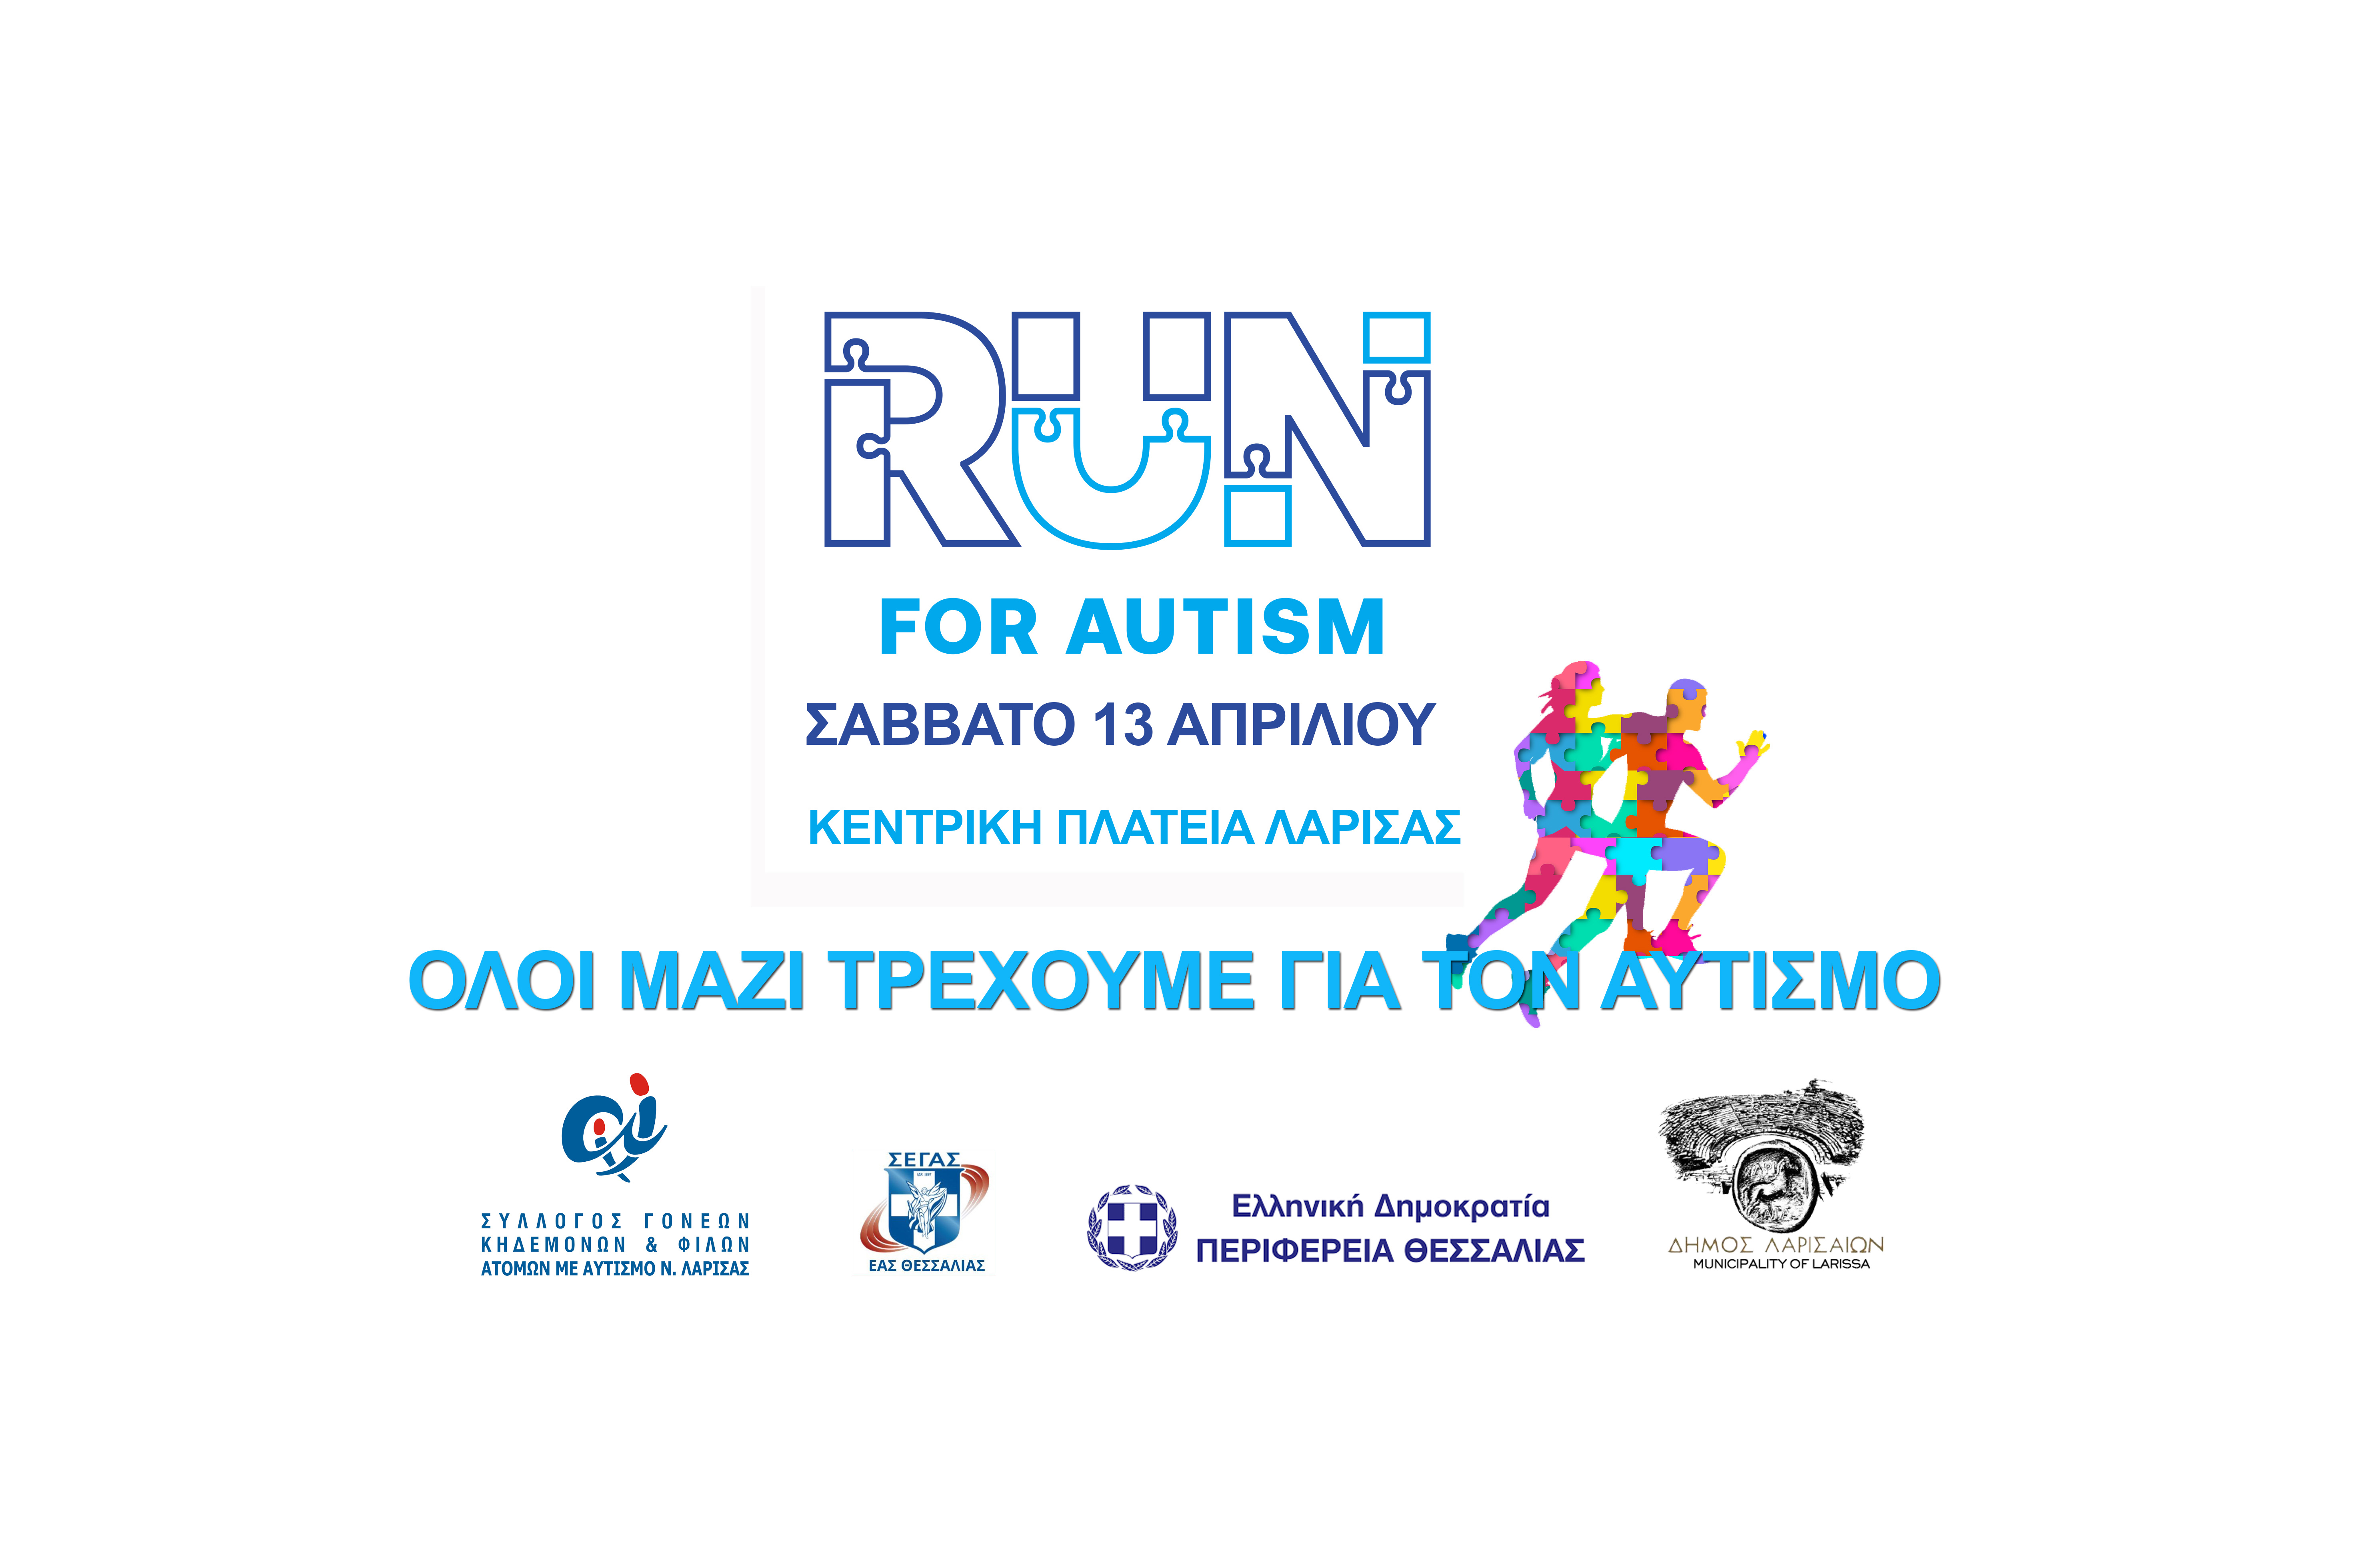 Λάρισα: Το Σάββατο 13 Απριλίου τρέχουμε για τον αυτισμό!